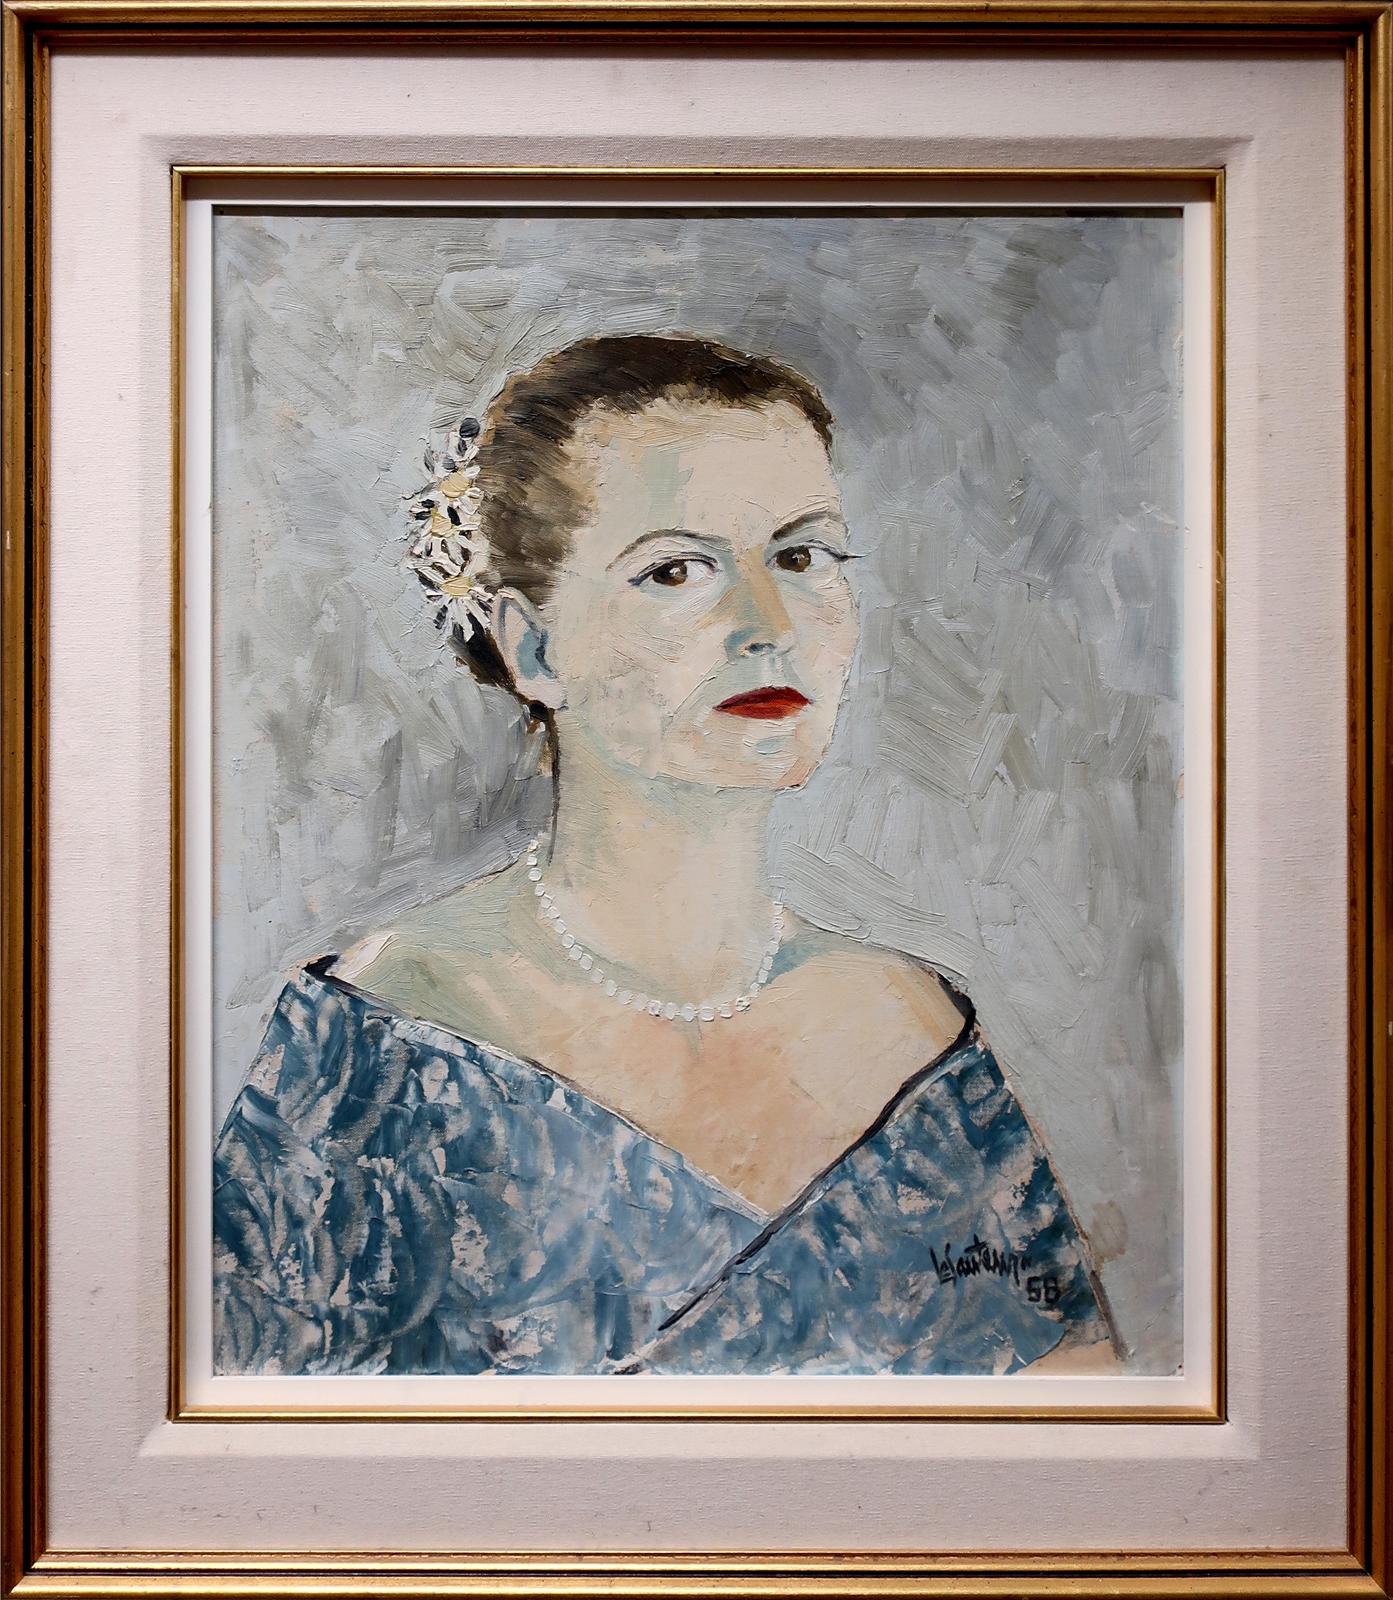 Claude Le Sauteur (1926-2007) - Portrait Of A Woman With Pearls